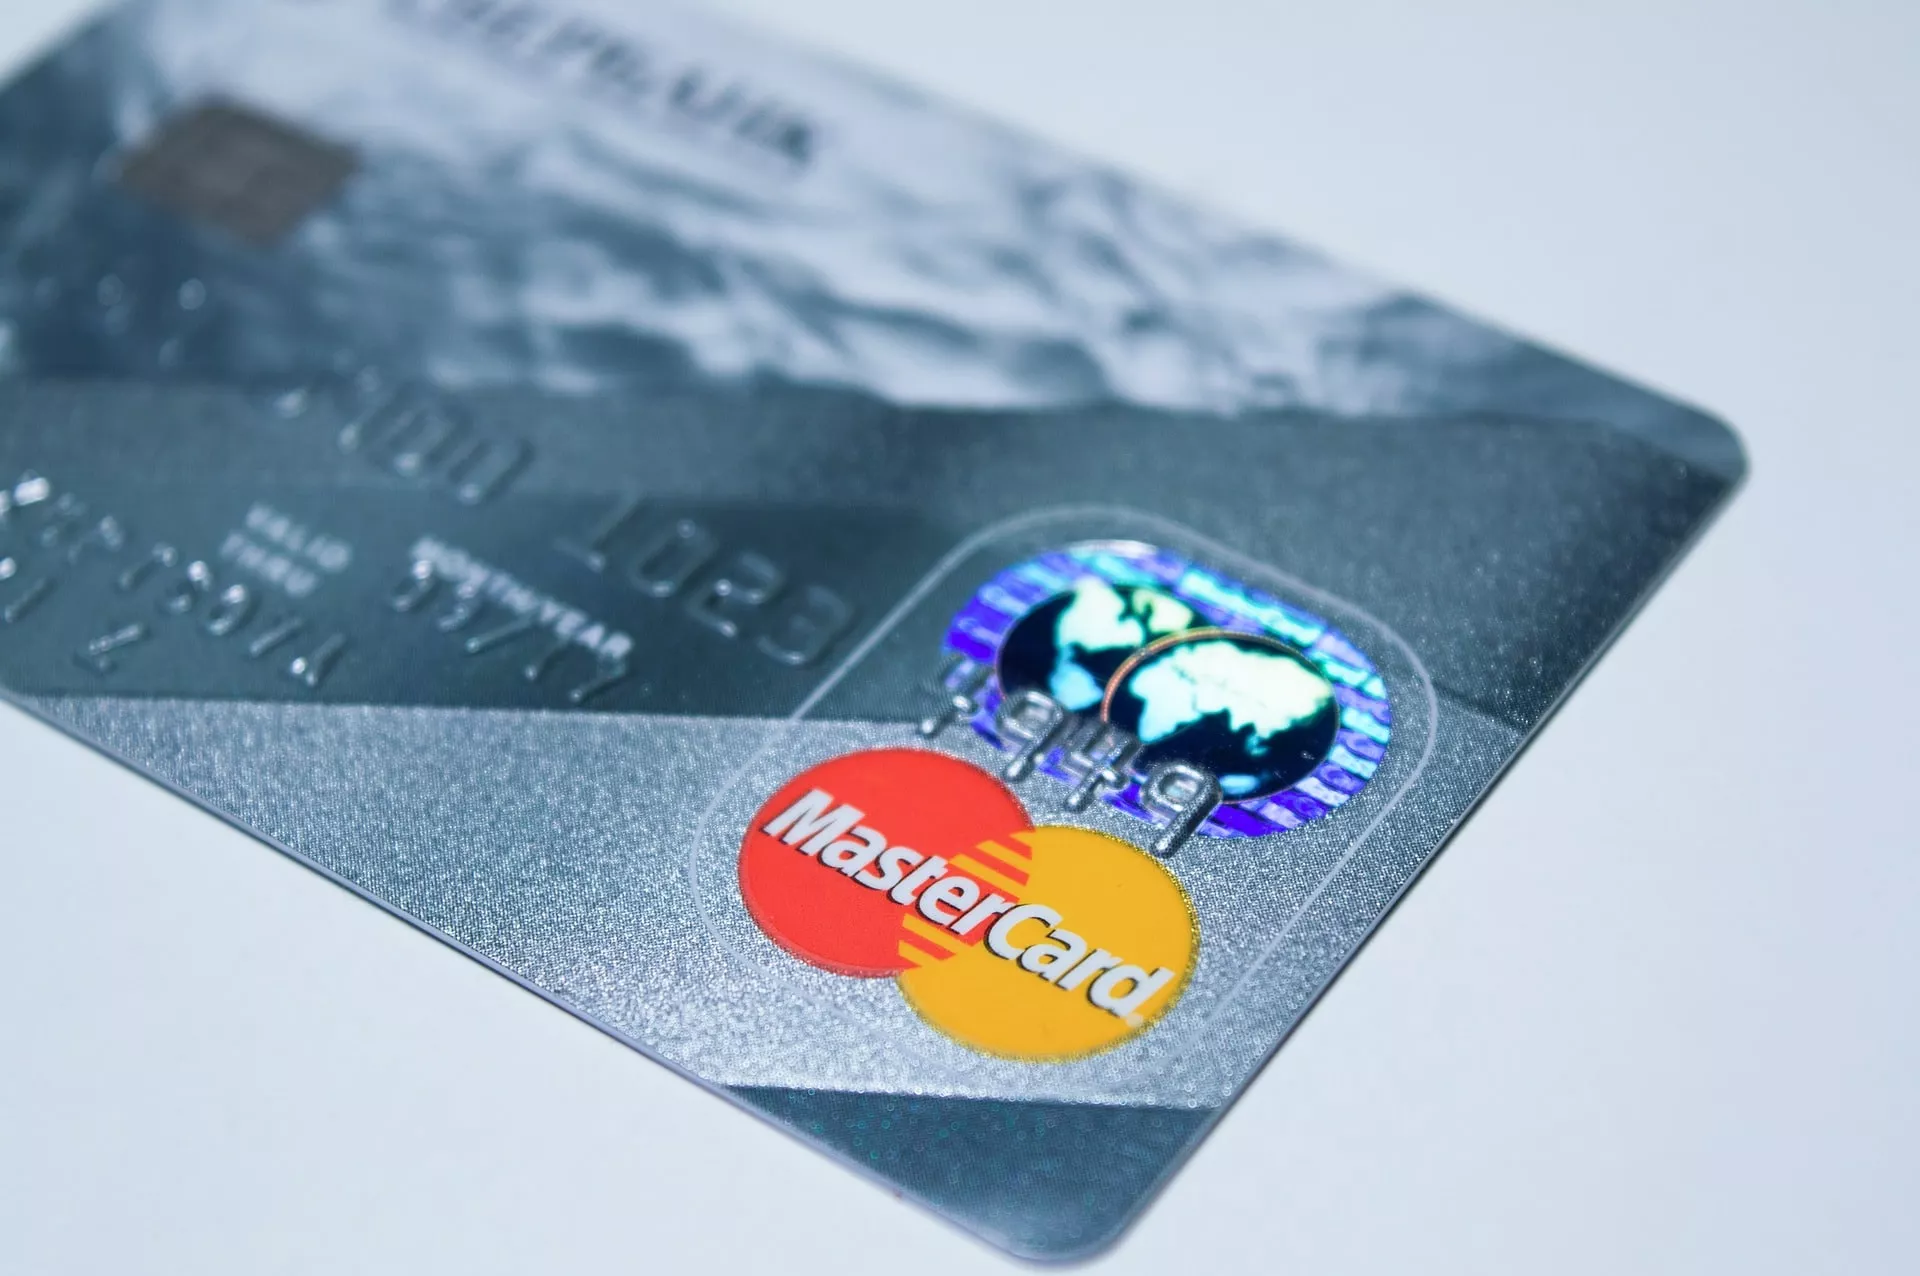 MasterCard zoekt werknemers voor ontwikkeling crypto, wat betekent dit?